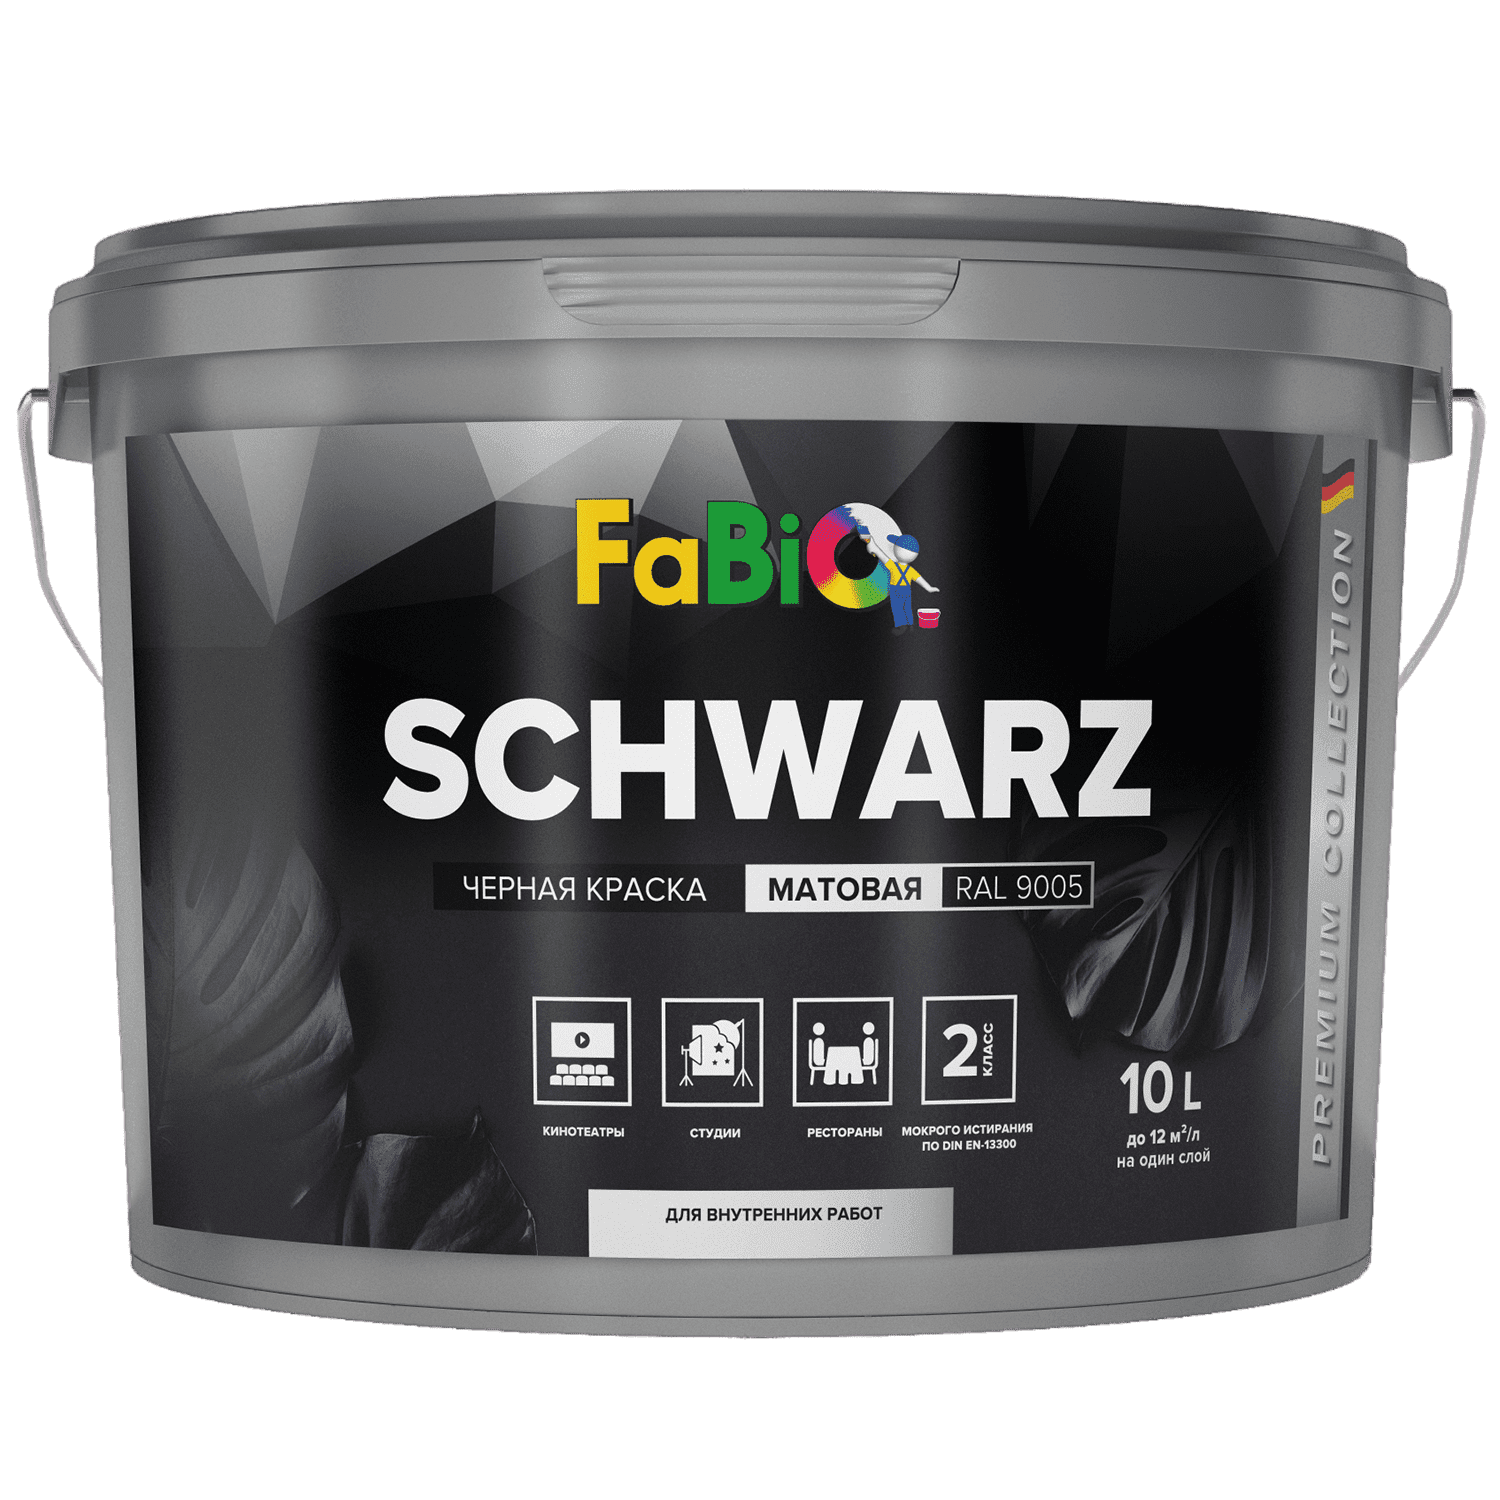 Черная краска Fabio Schwarz 10 л. для стен и потолков